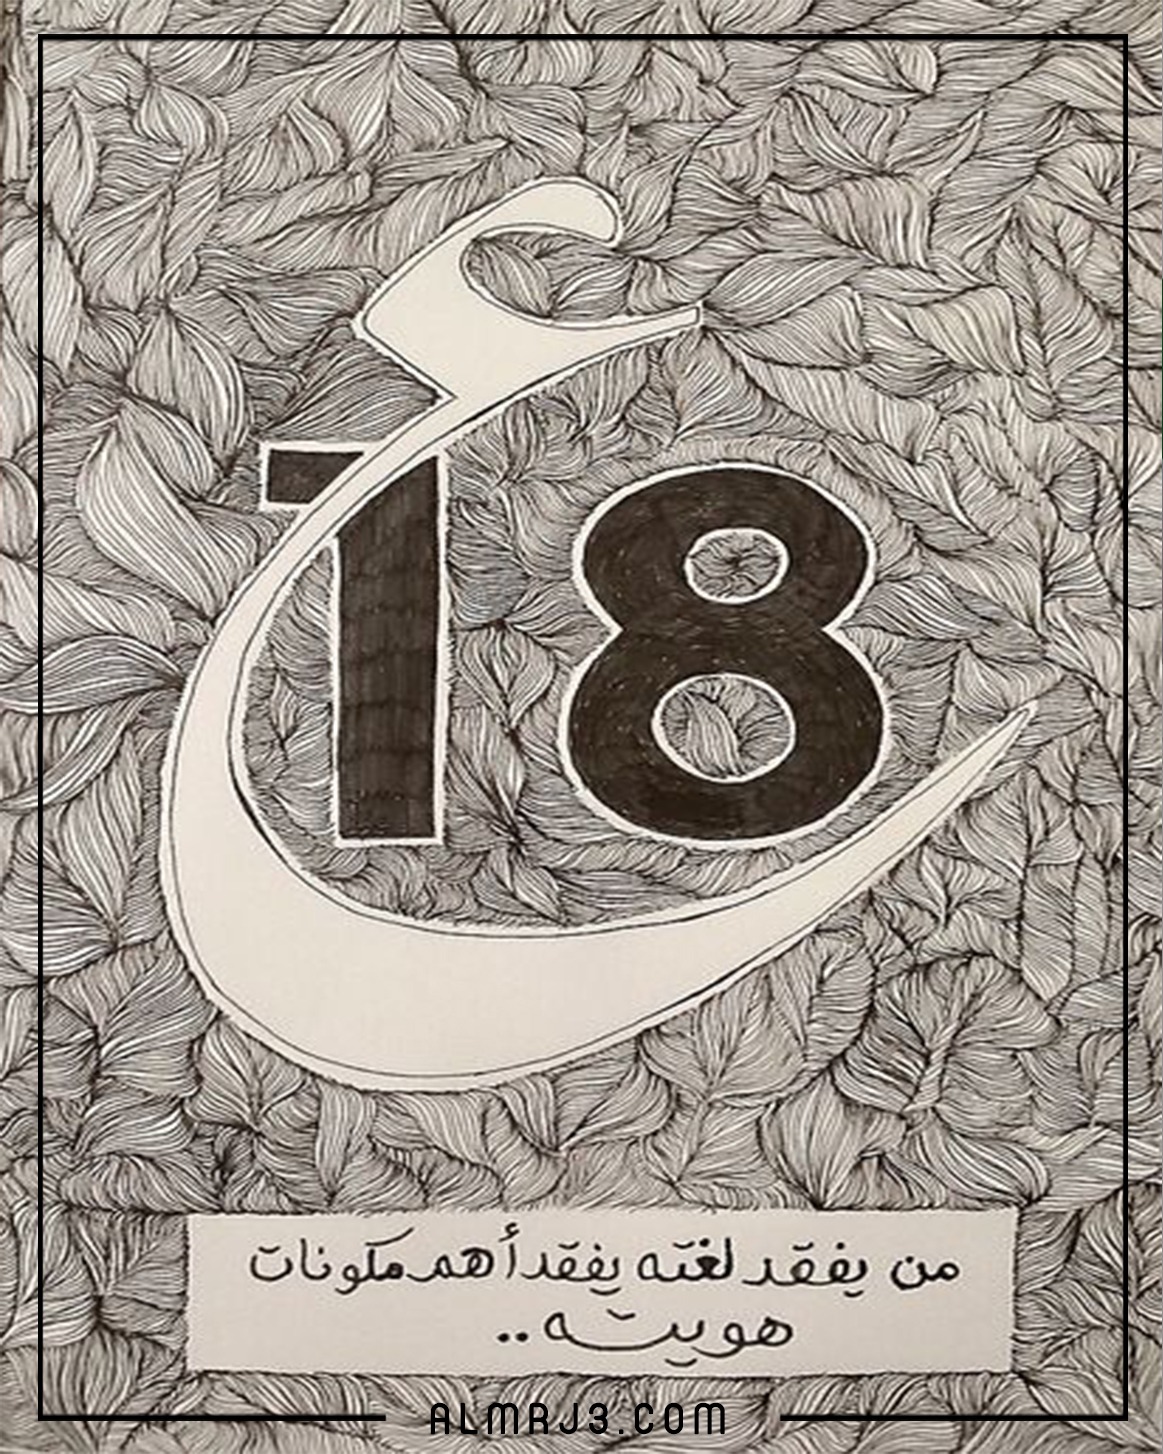 صور عن اليَوم العالمِي للغَة العربيَّة 2021 1